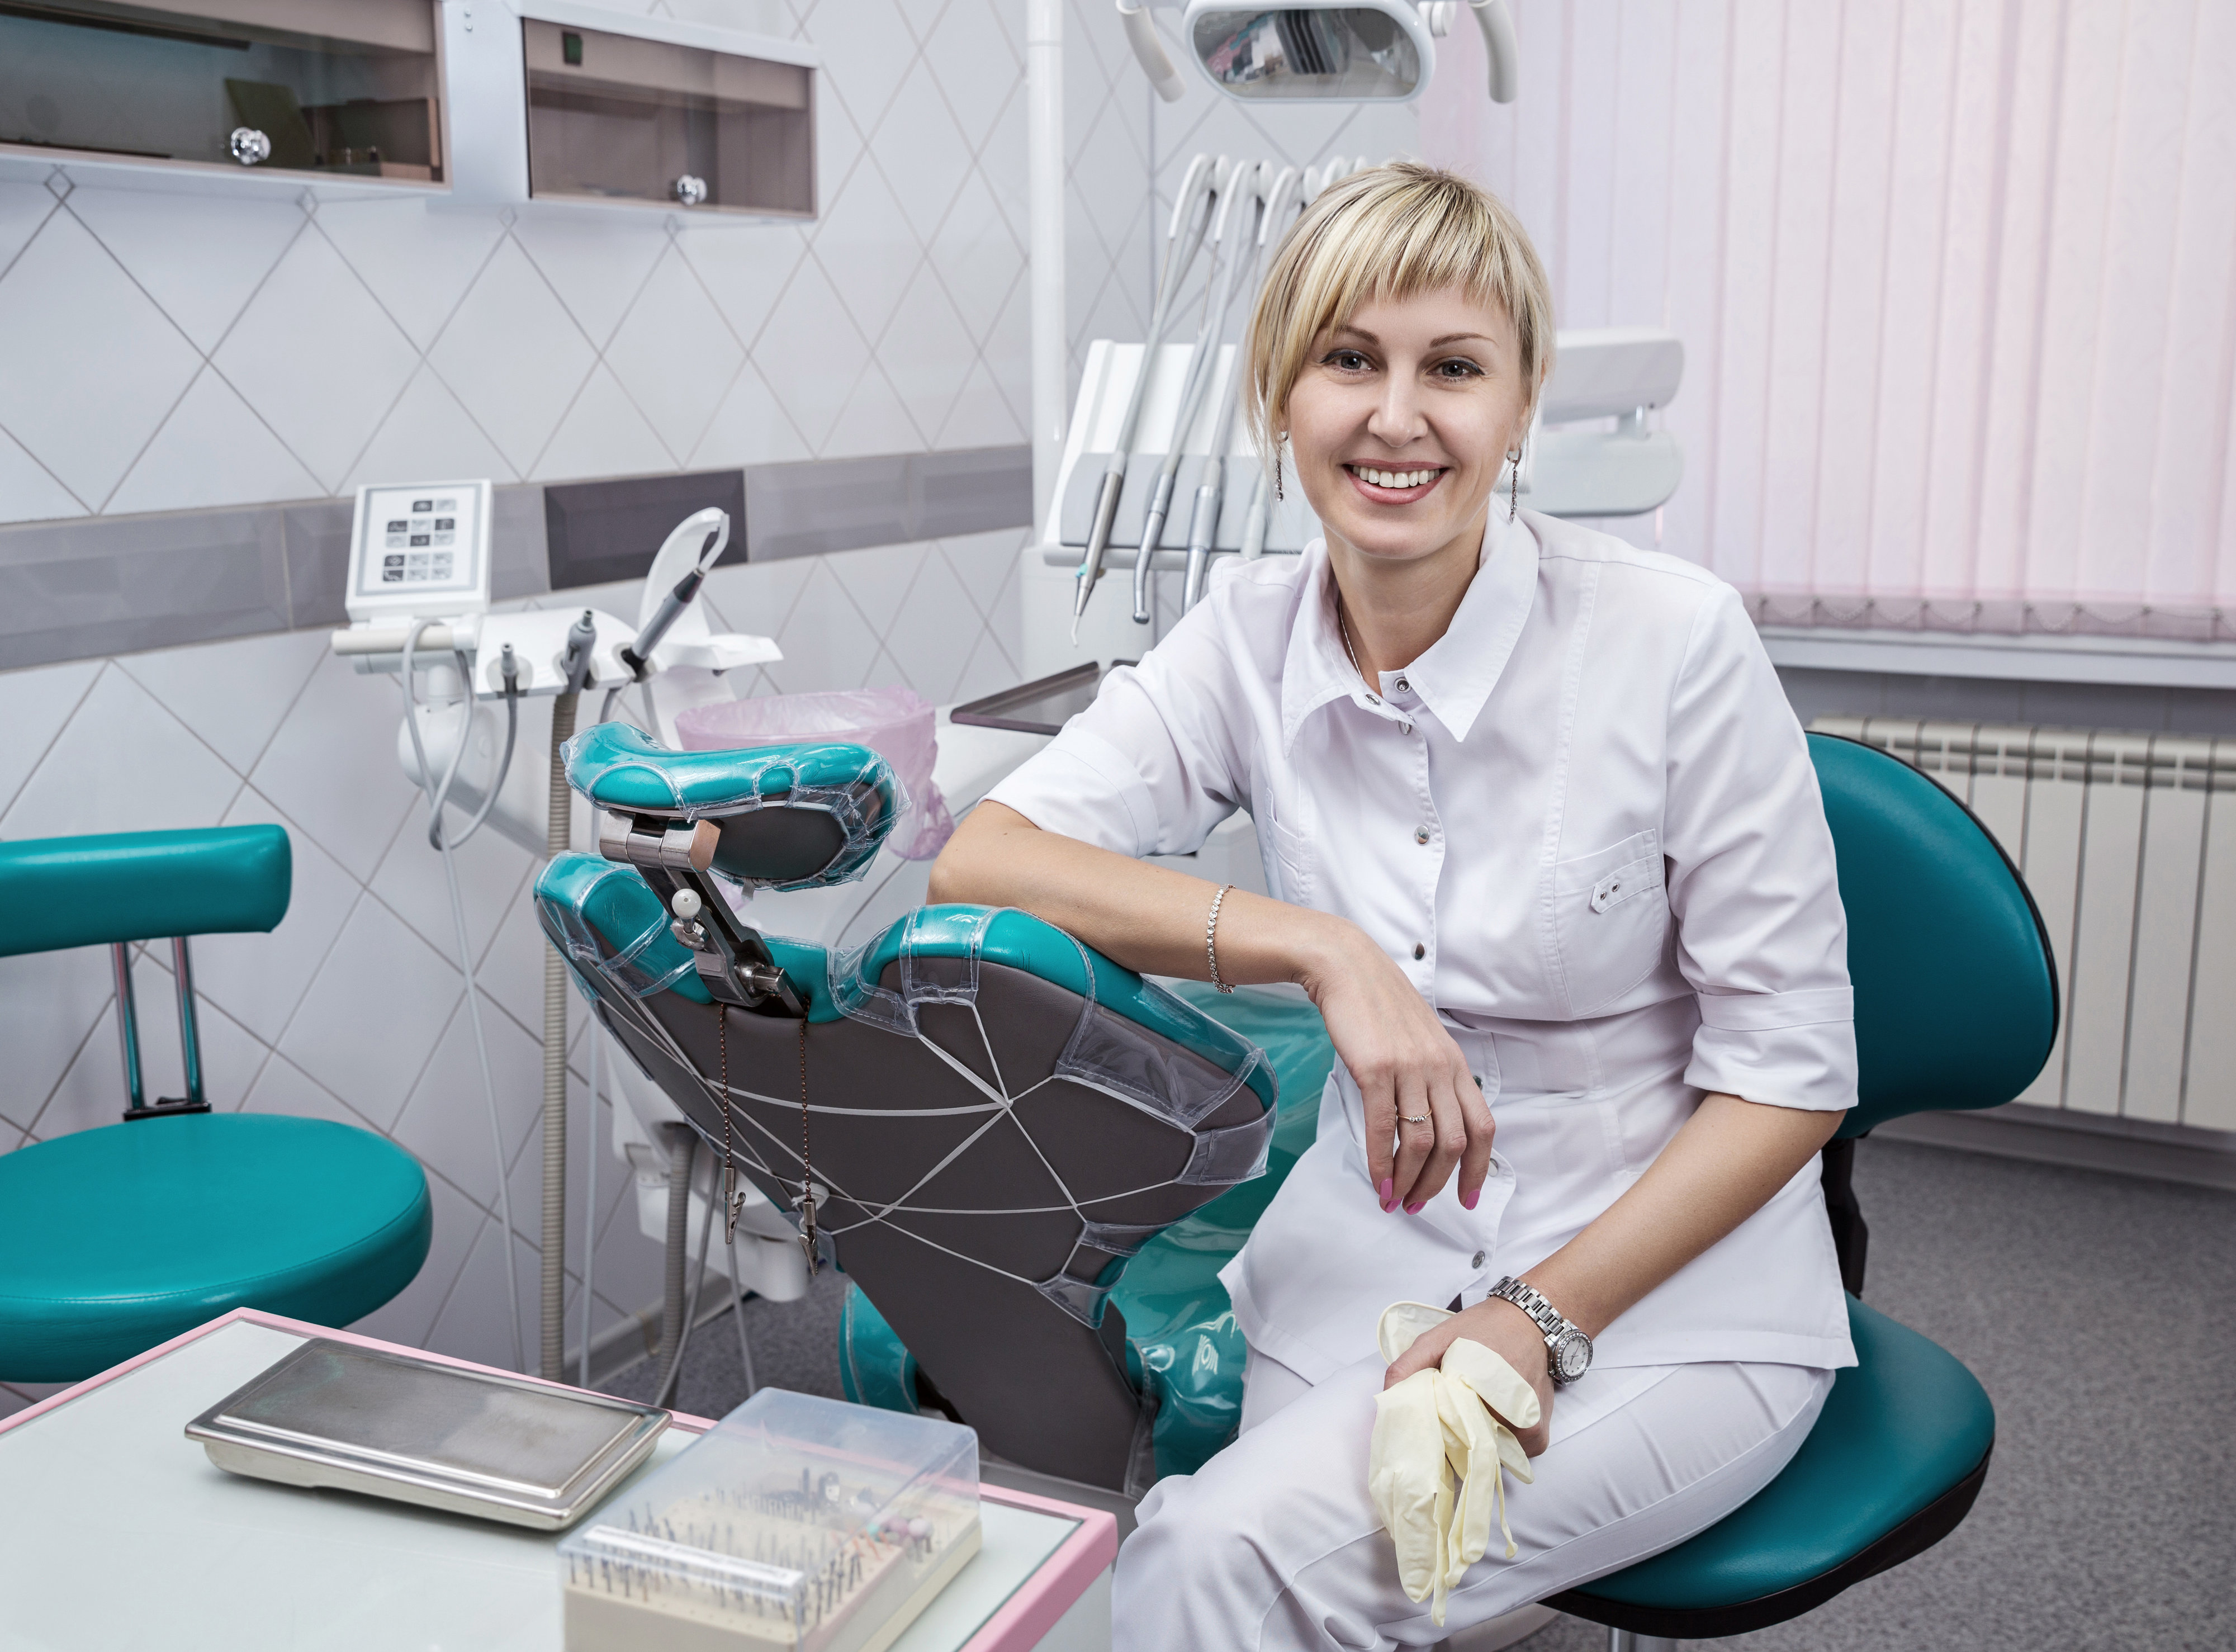 Запись к врачу стоматологу новокузнецк